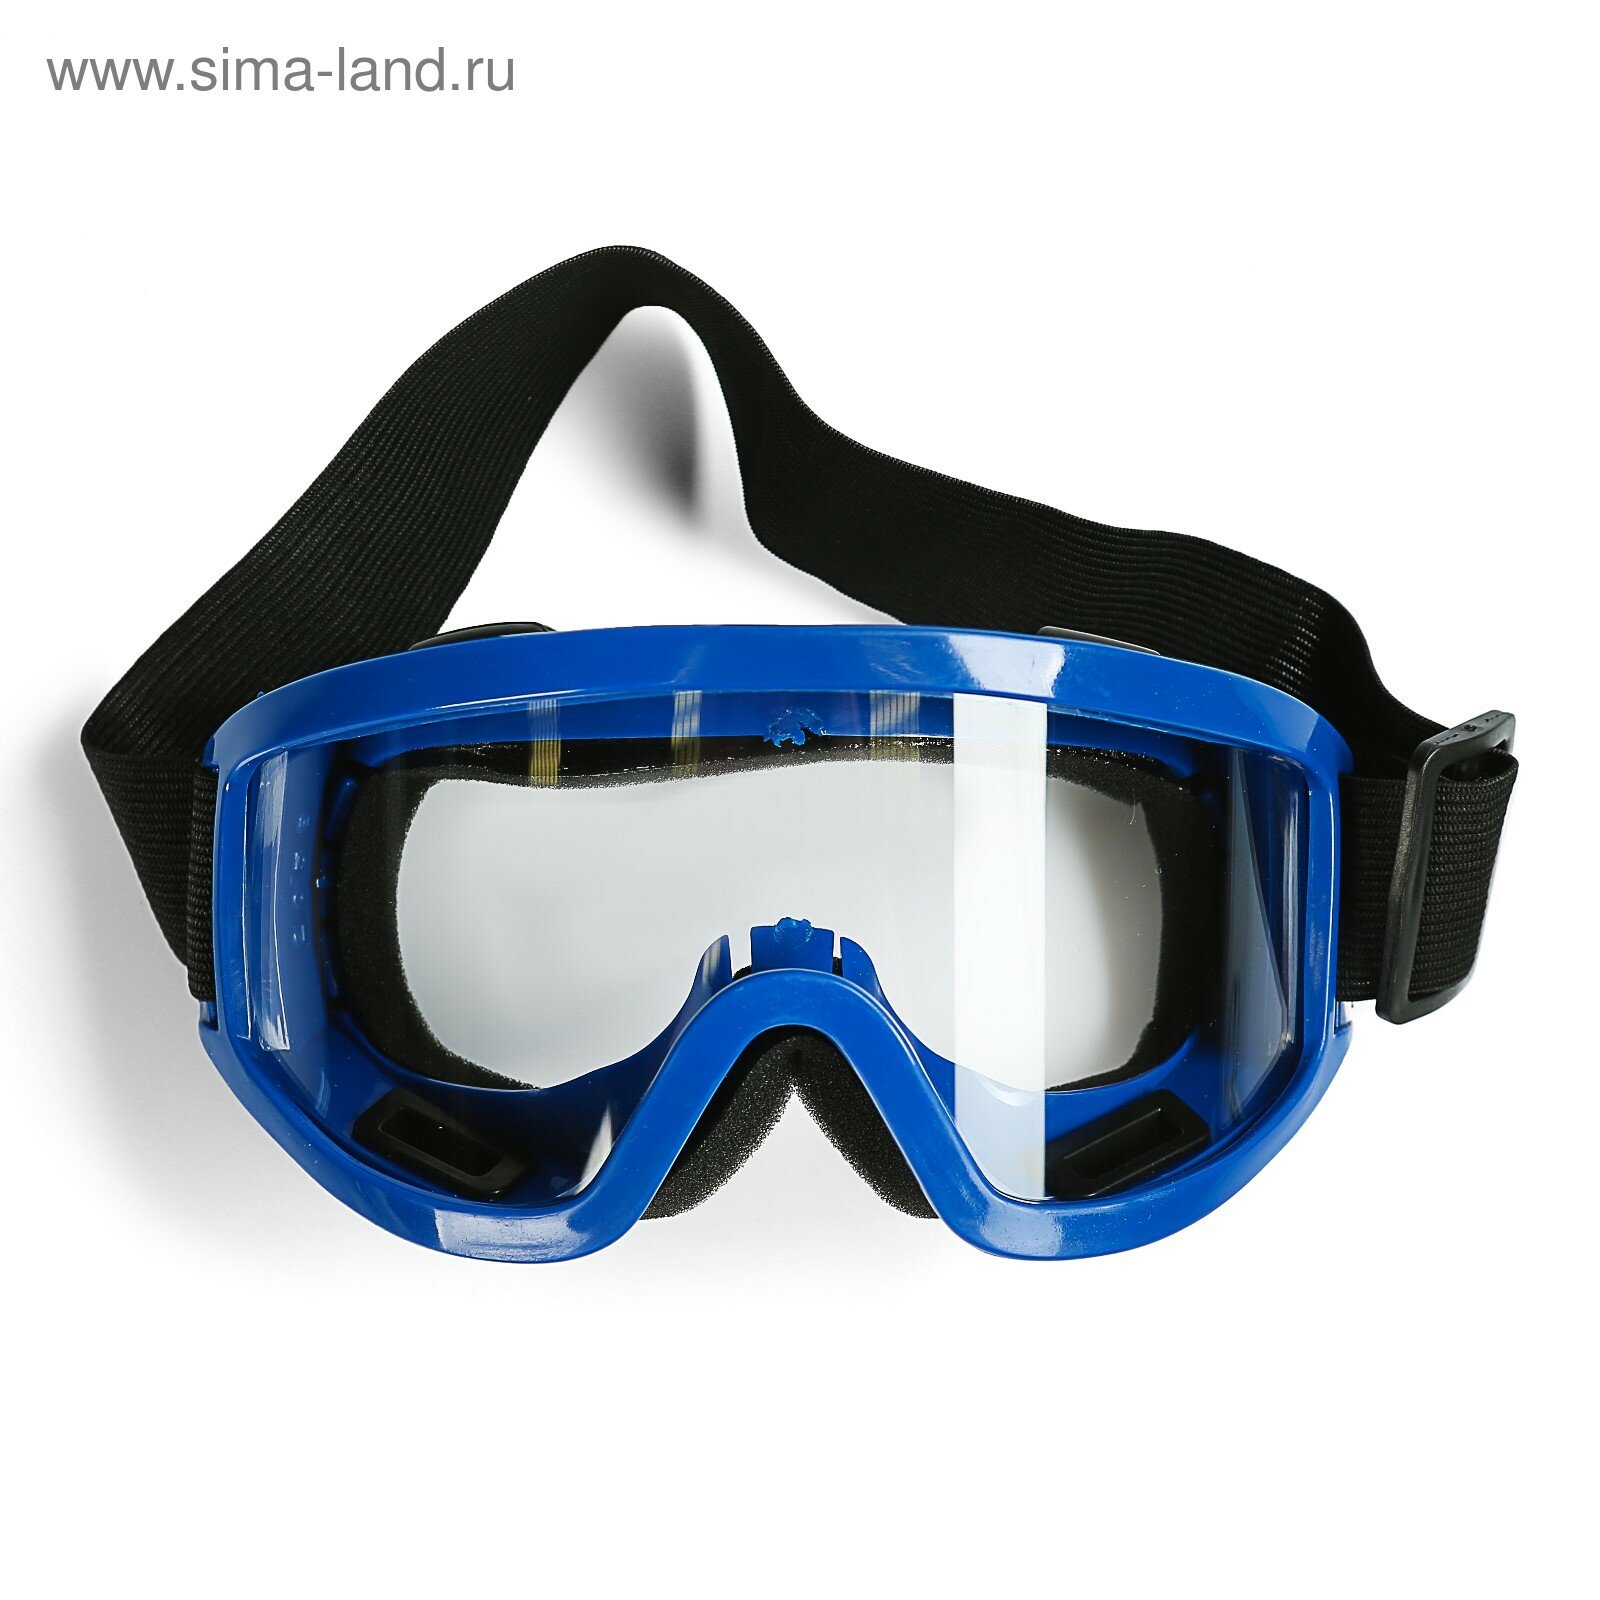 Очки-маска для езды на мототехнике, стекло прозрачное, цвет синий (1шт.)